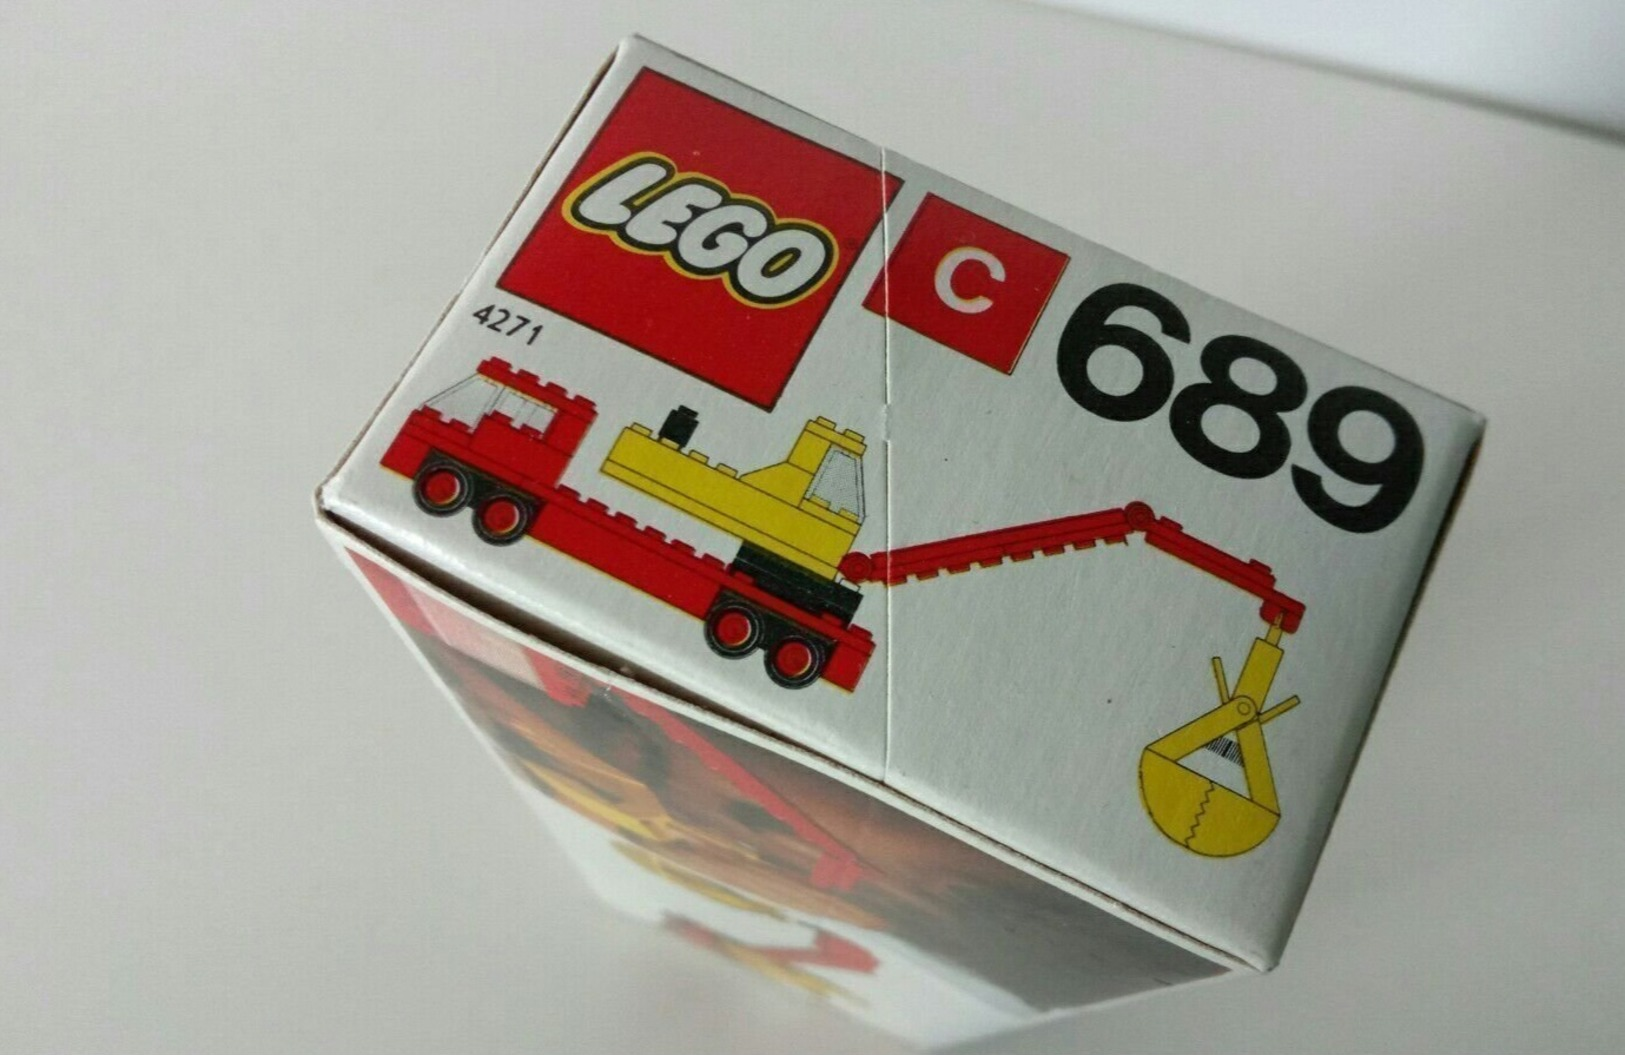 Lego Art 689 Del 1974 - Lego System